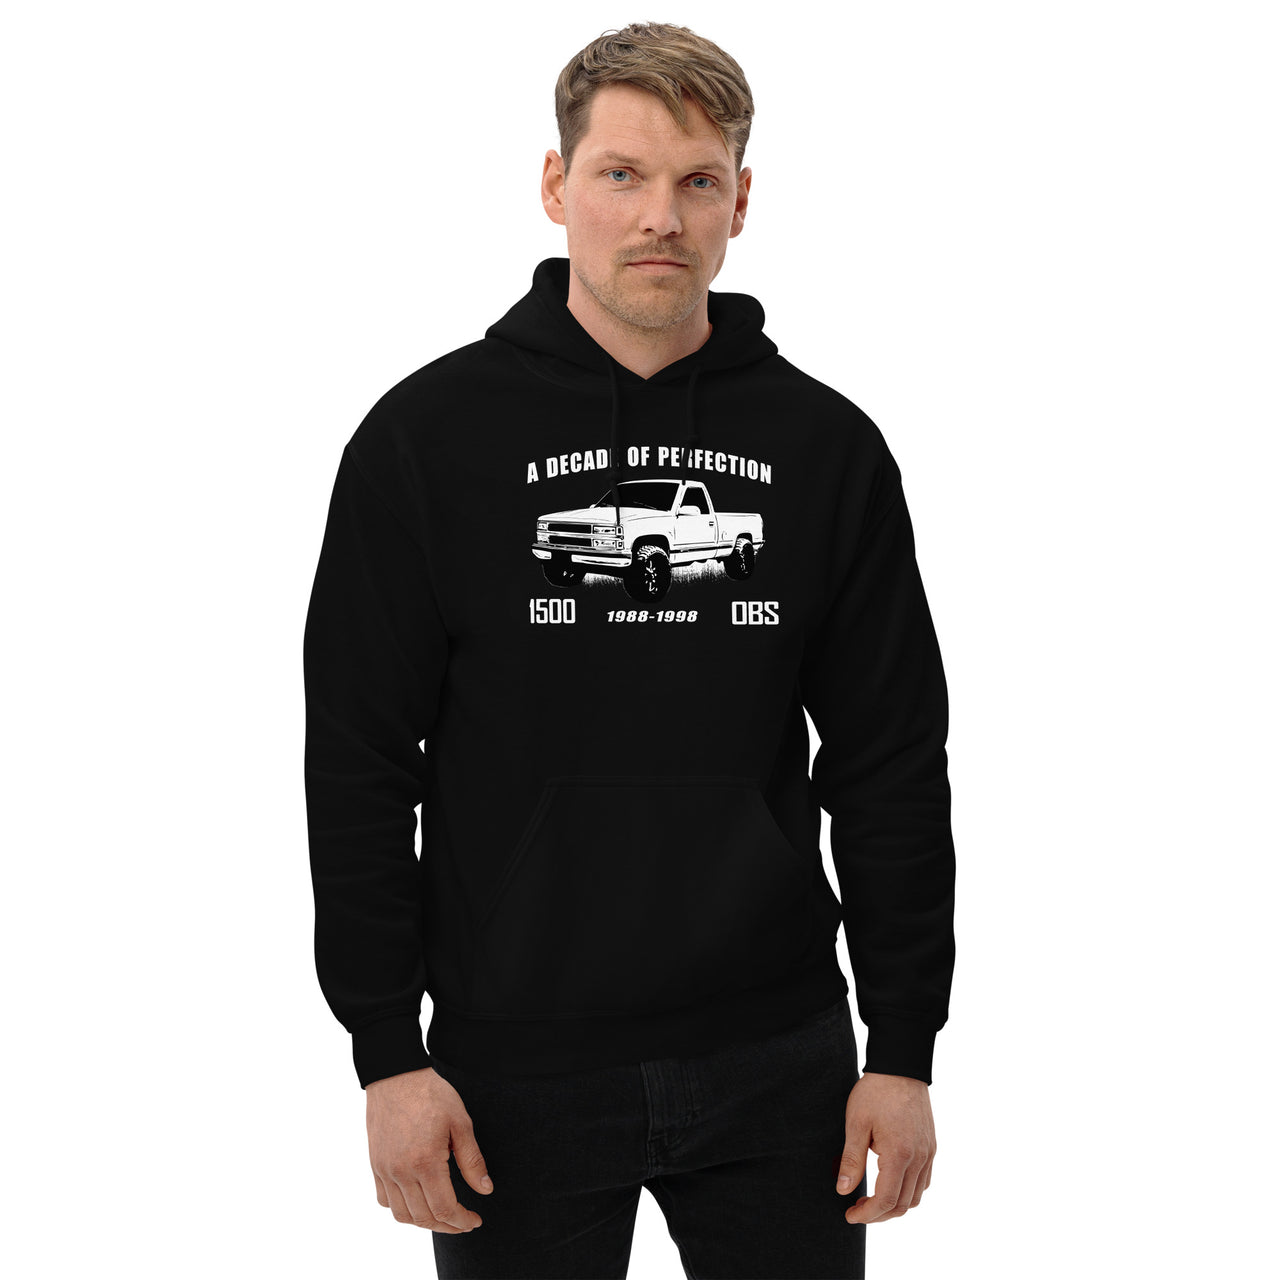 OBS 1500 Hoodie Sweatshirt modeled in black